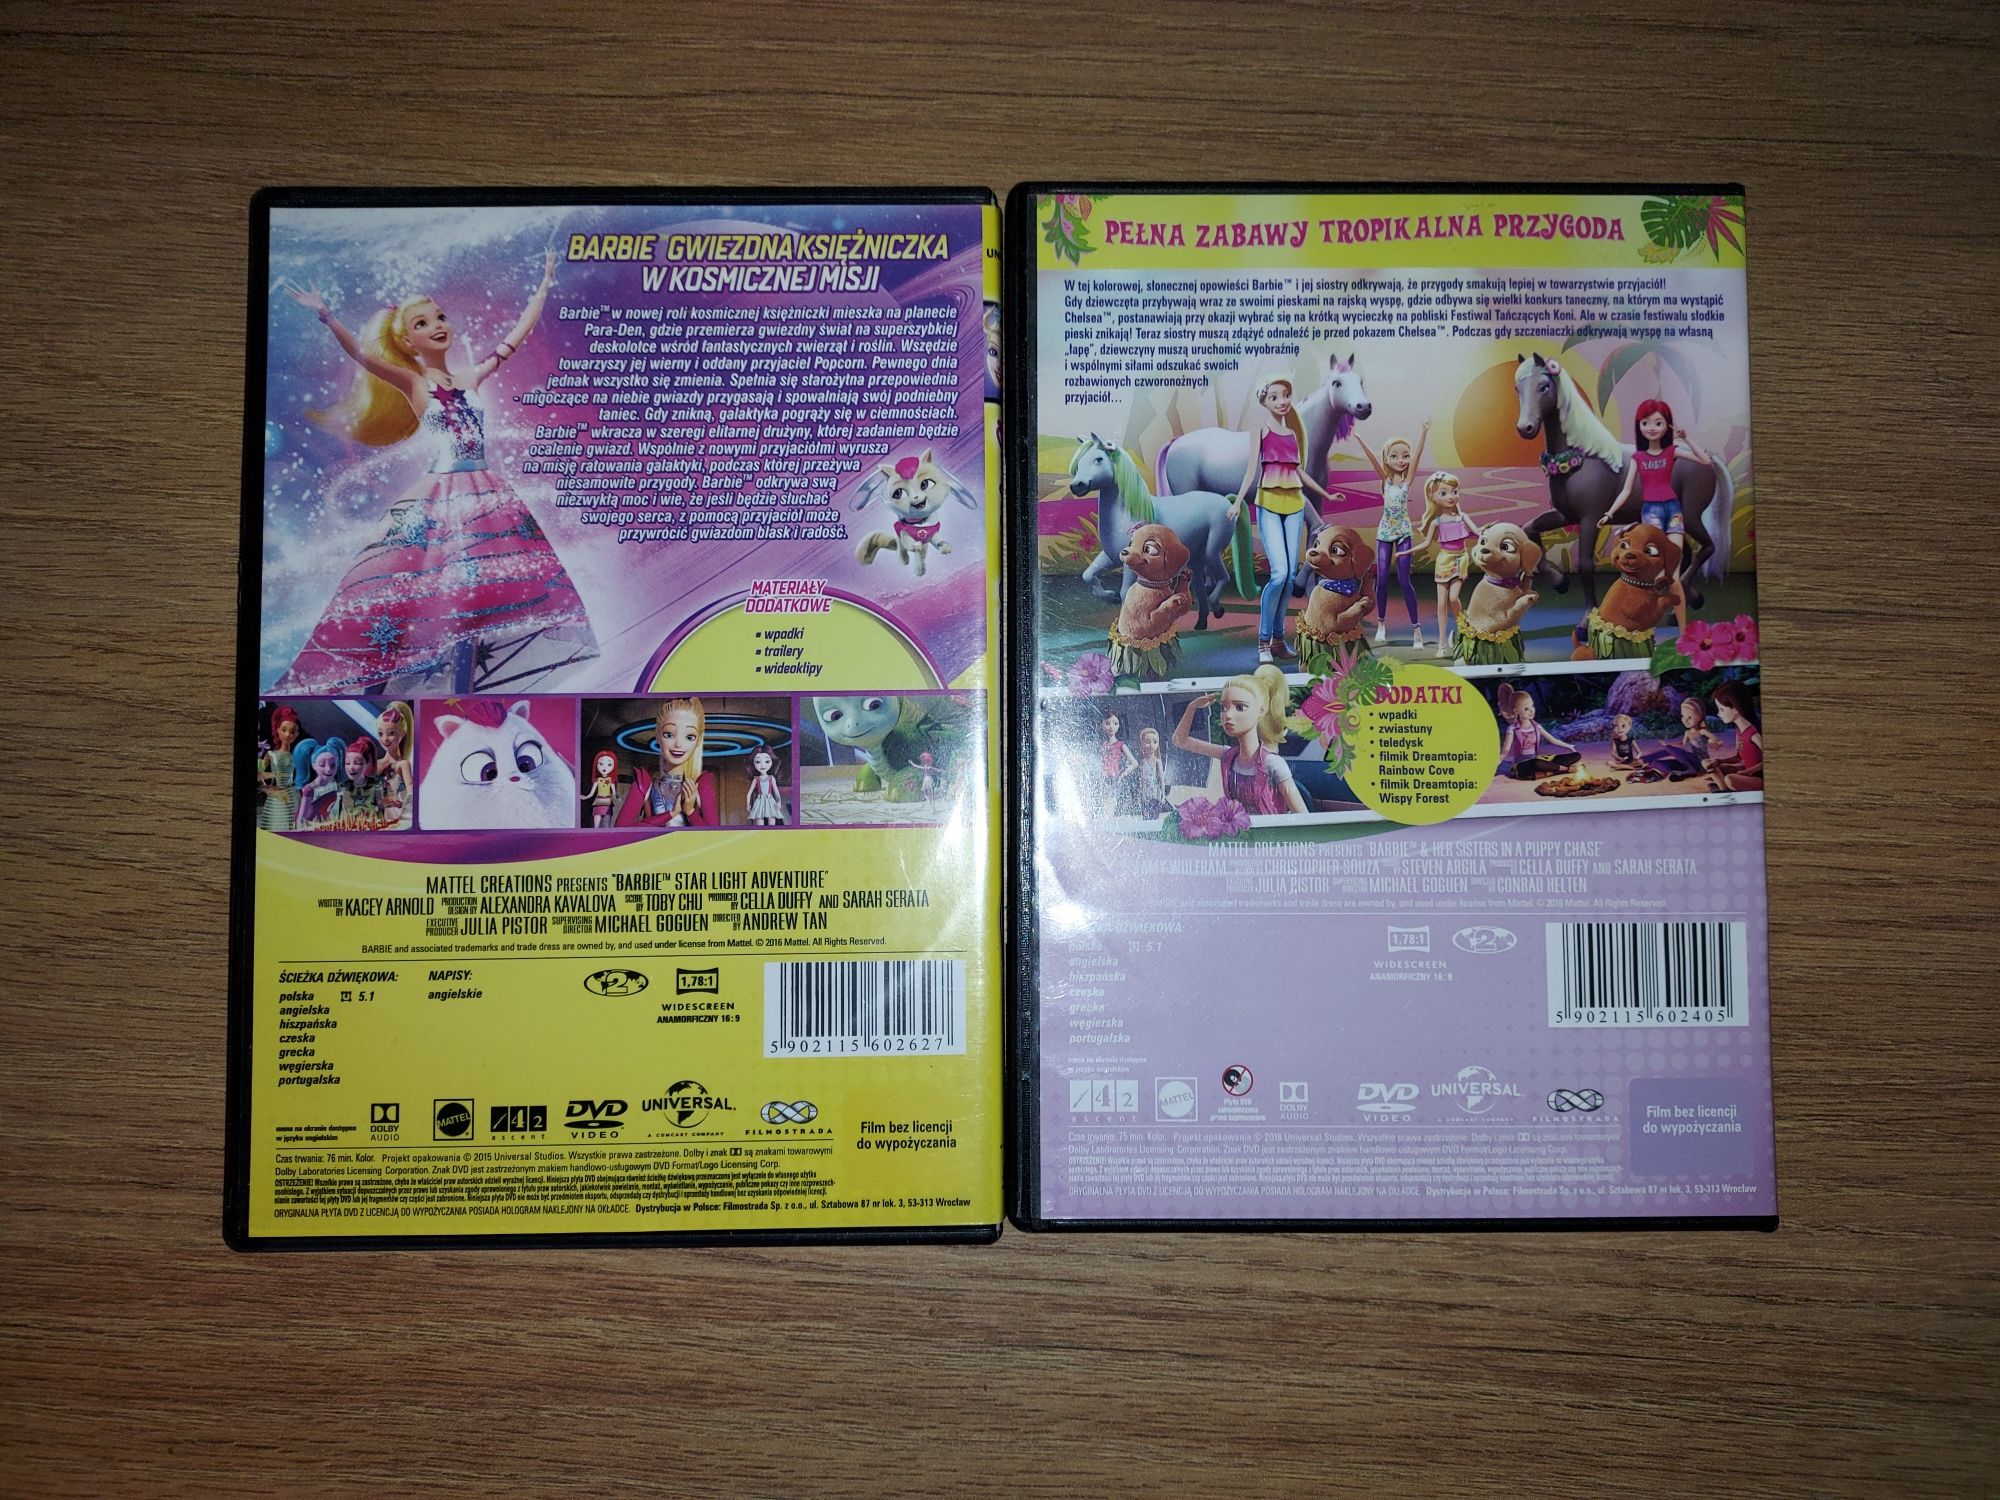 Barbie Gwiezdna przygoda i Na tropie piesków dwie bajki filmy na DVD